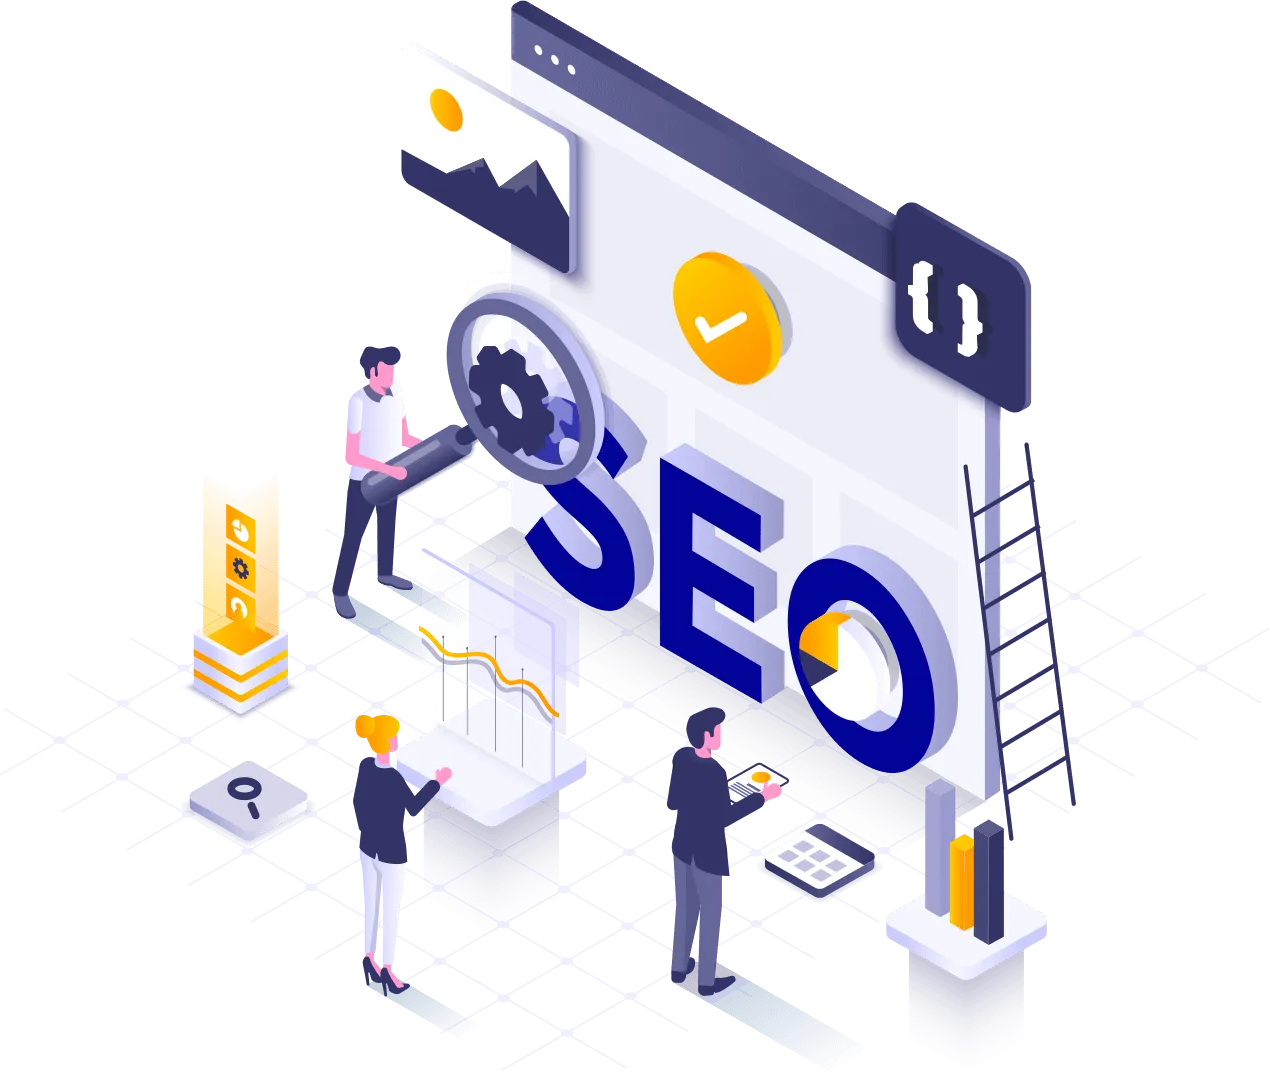 Оптимизация Сайта Для Seo Является Неотъемлемой Частью Успешной Онлайн-Присутствия Любого Бизнеса Или Организации. Она Включает В Себя Ряд Стратегий И Техник, Направленных На Улучшение Видимости Сайта В Поисковых Системах, Таких Как Google, Яндекс И Bing.